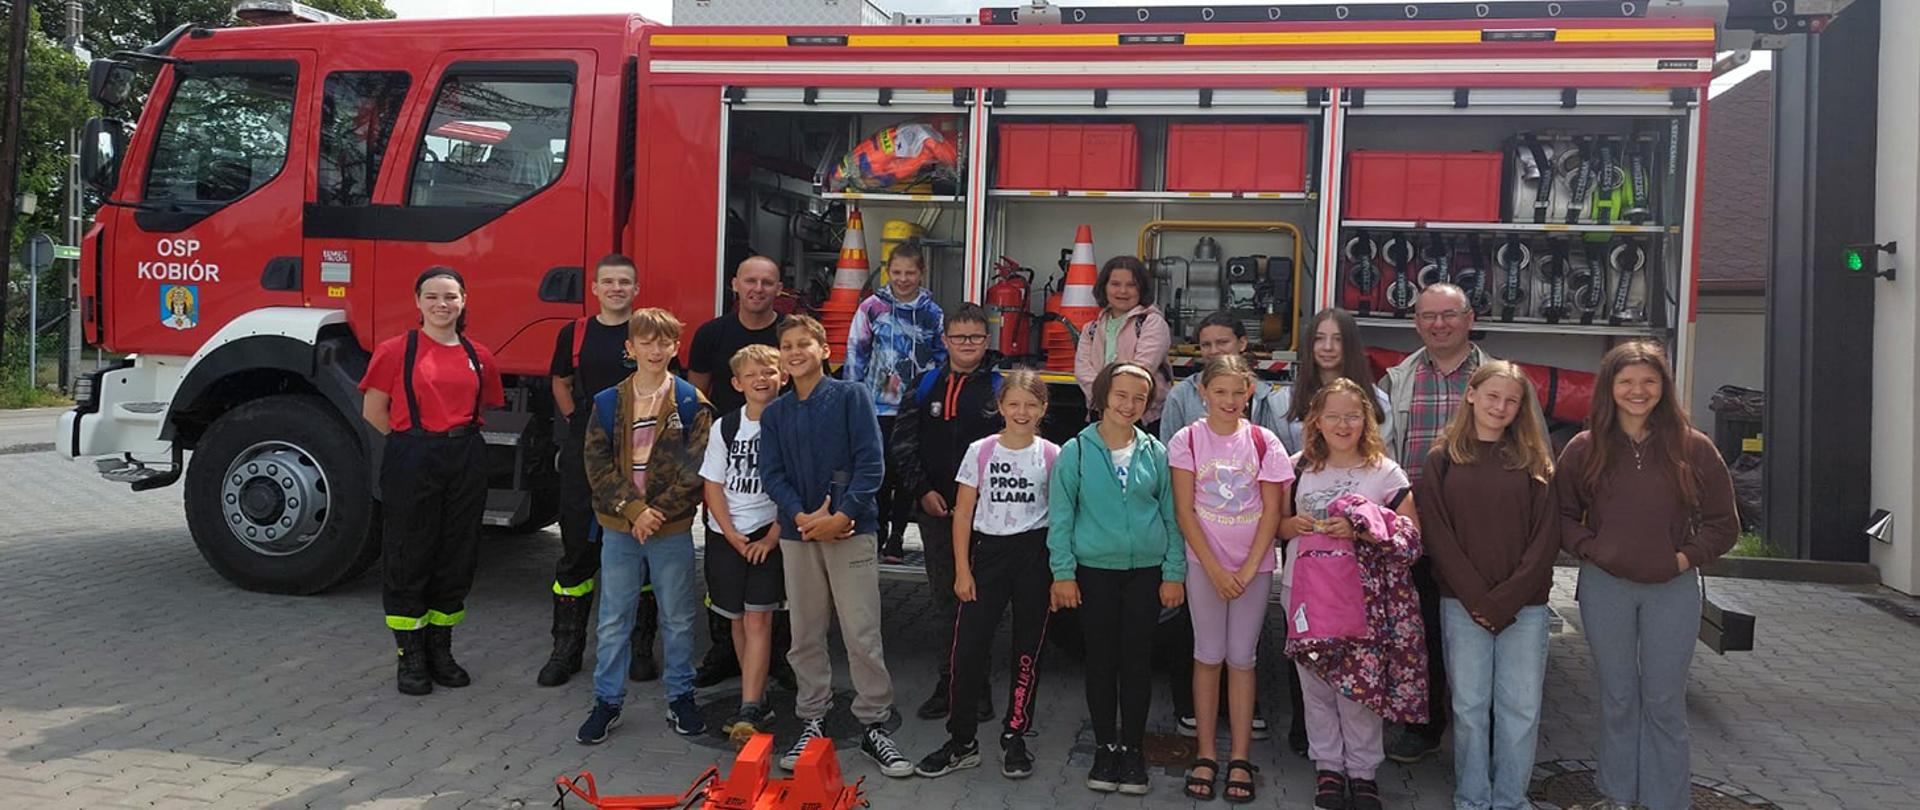 Grupa dzieci wraz z opiekunem oraz strażakami OSP na tle wozu strażackiego